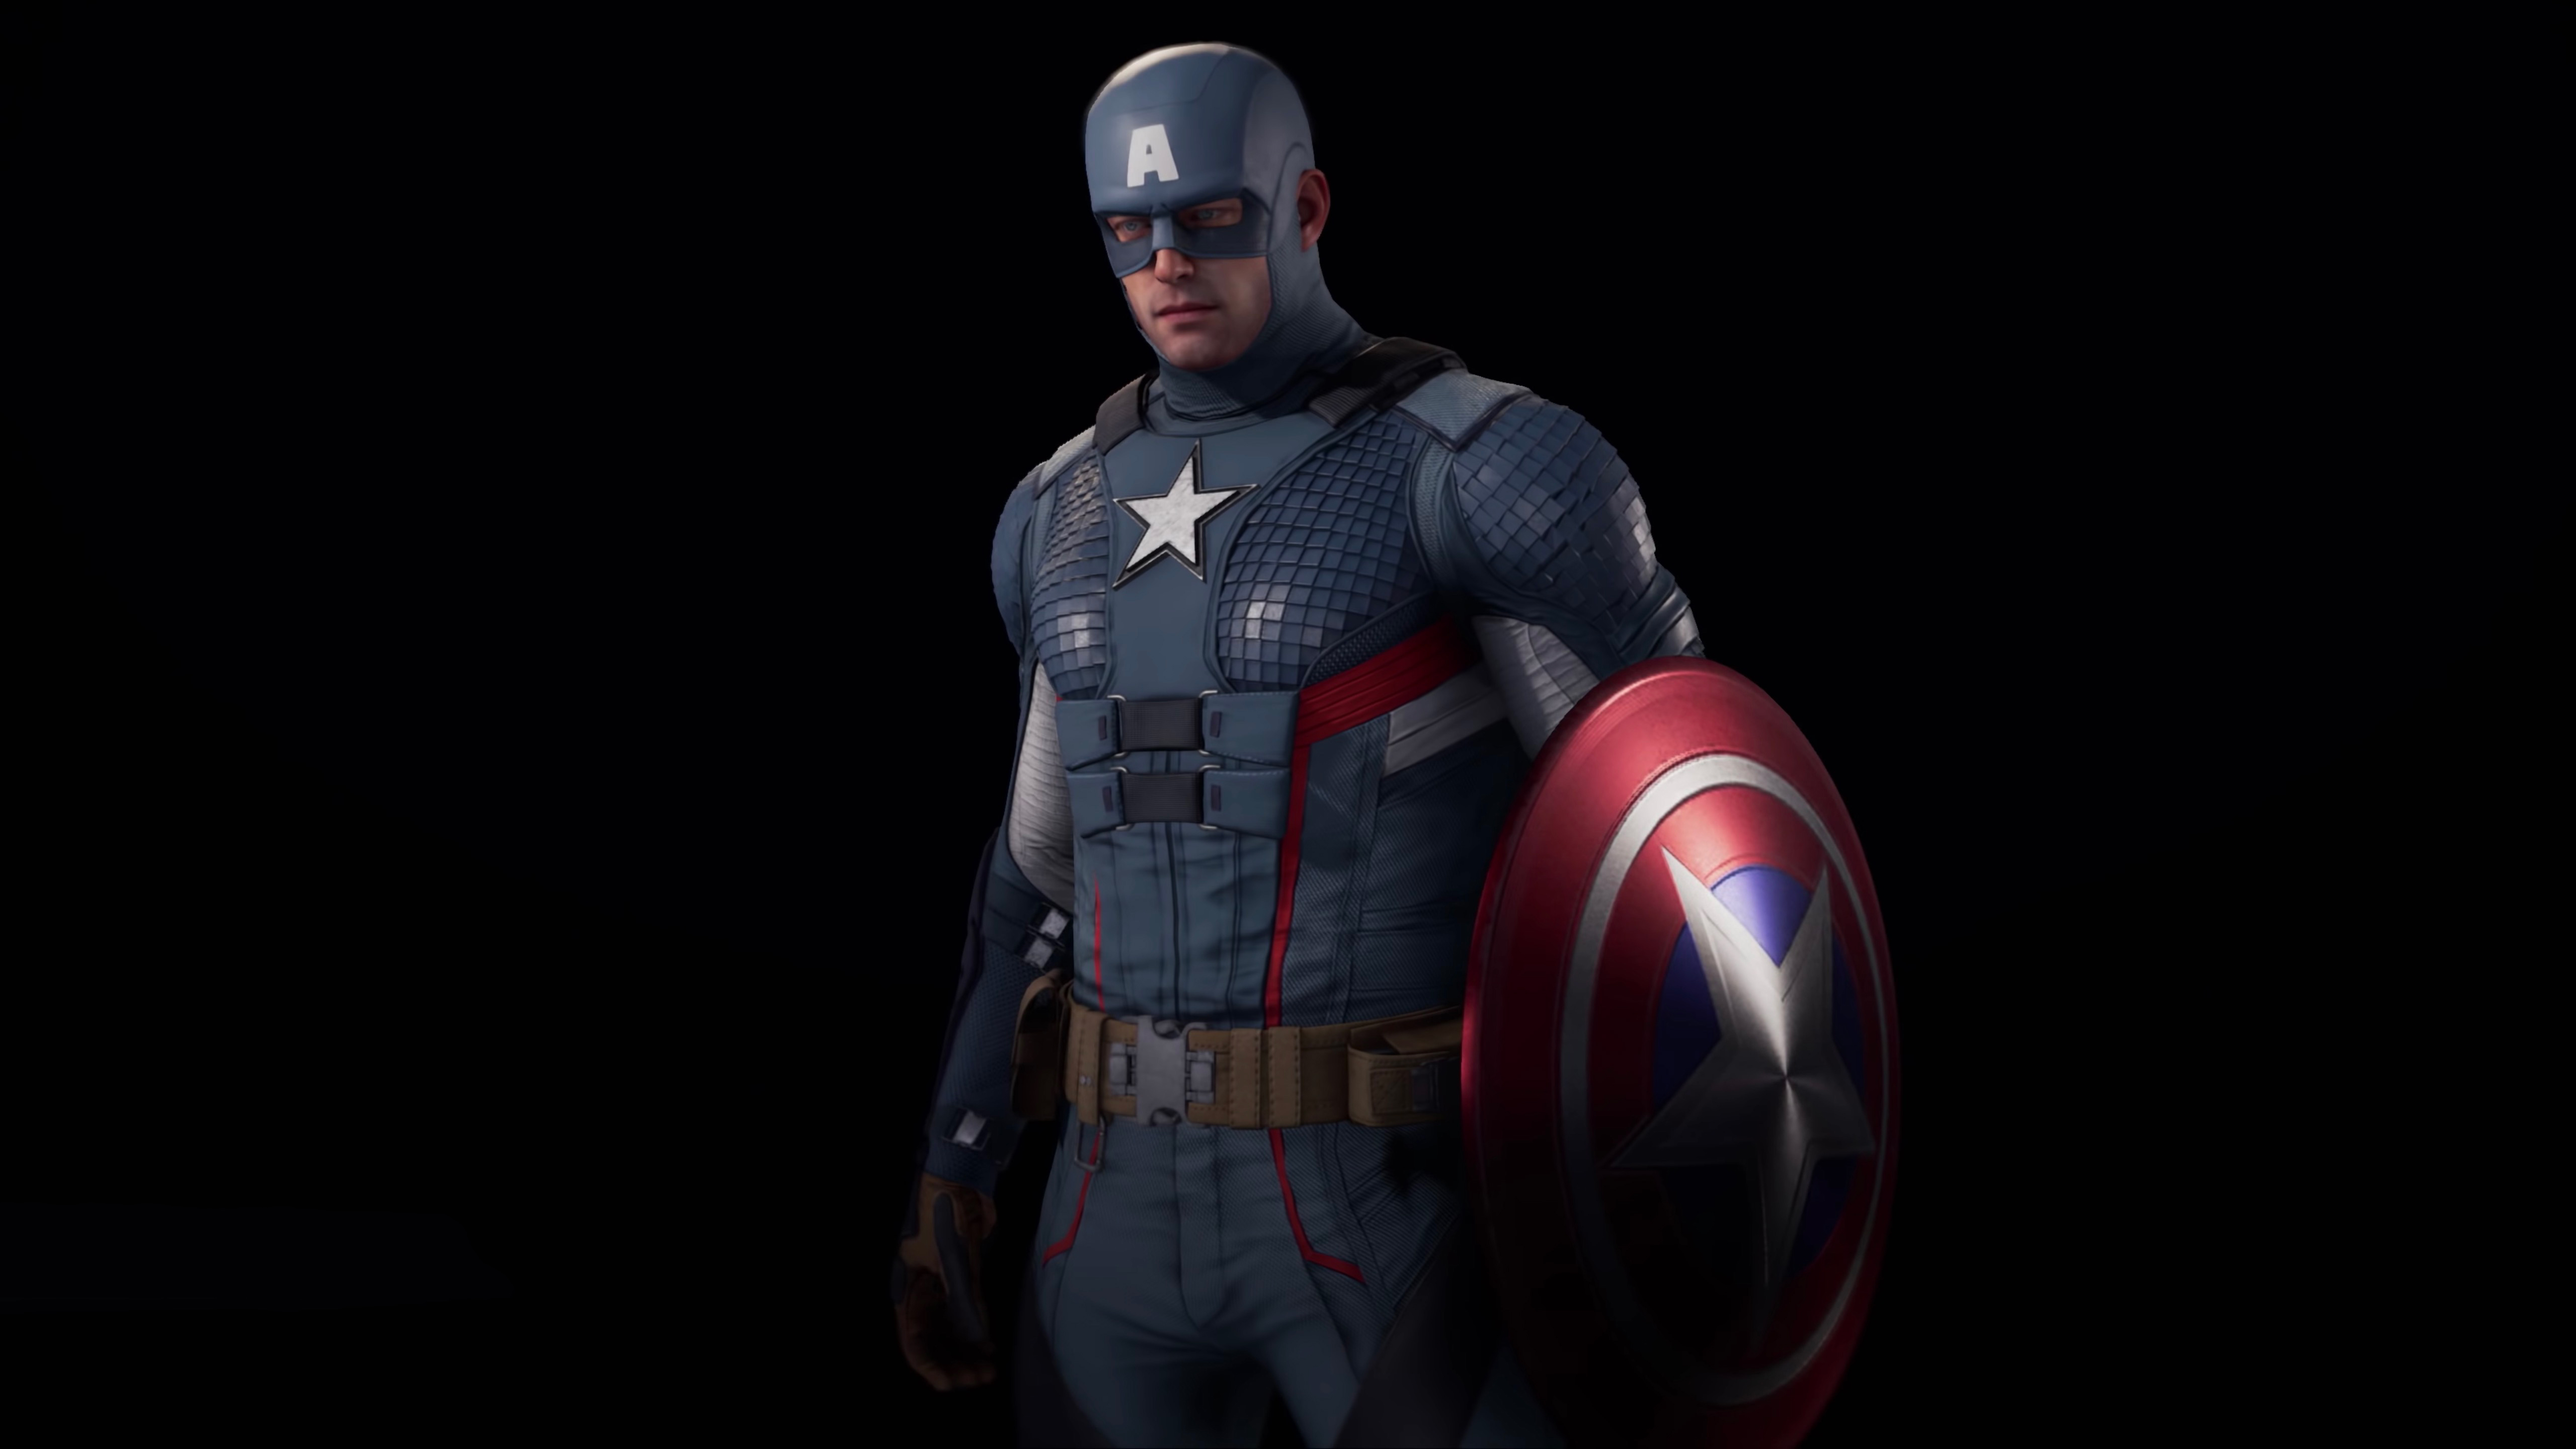 Imágenes y fondos de Avengers  Imagenes de capitan america